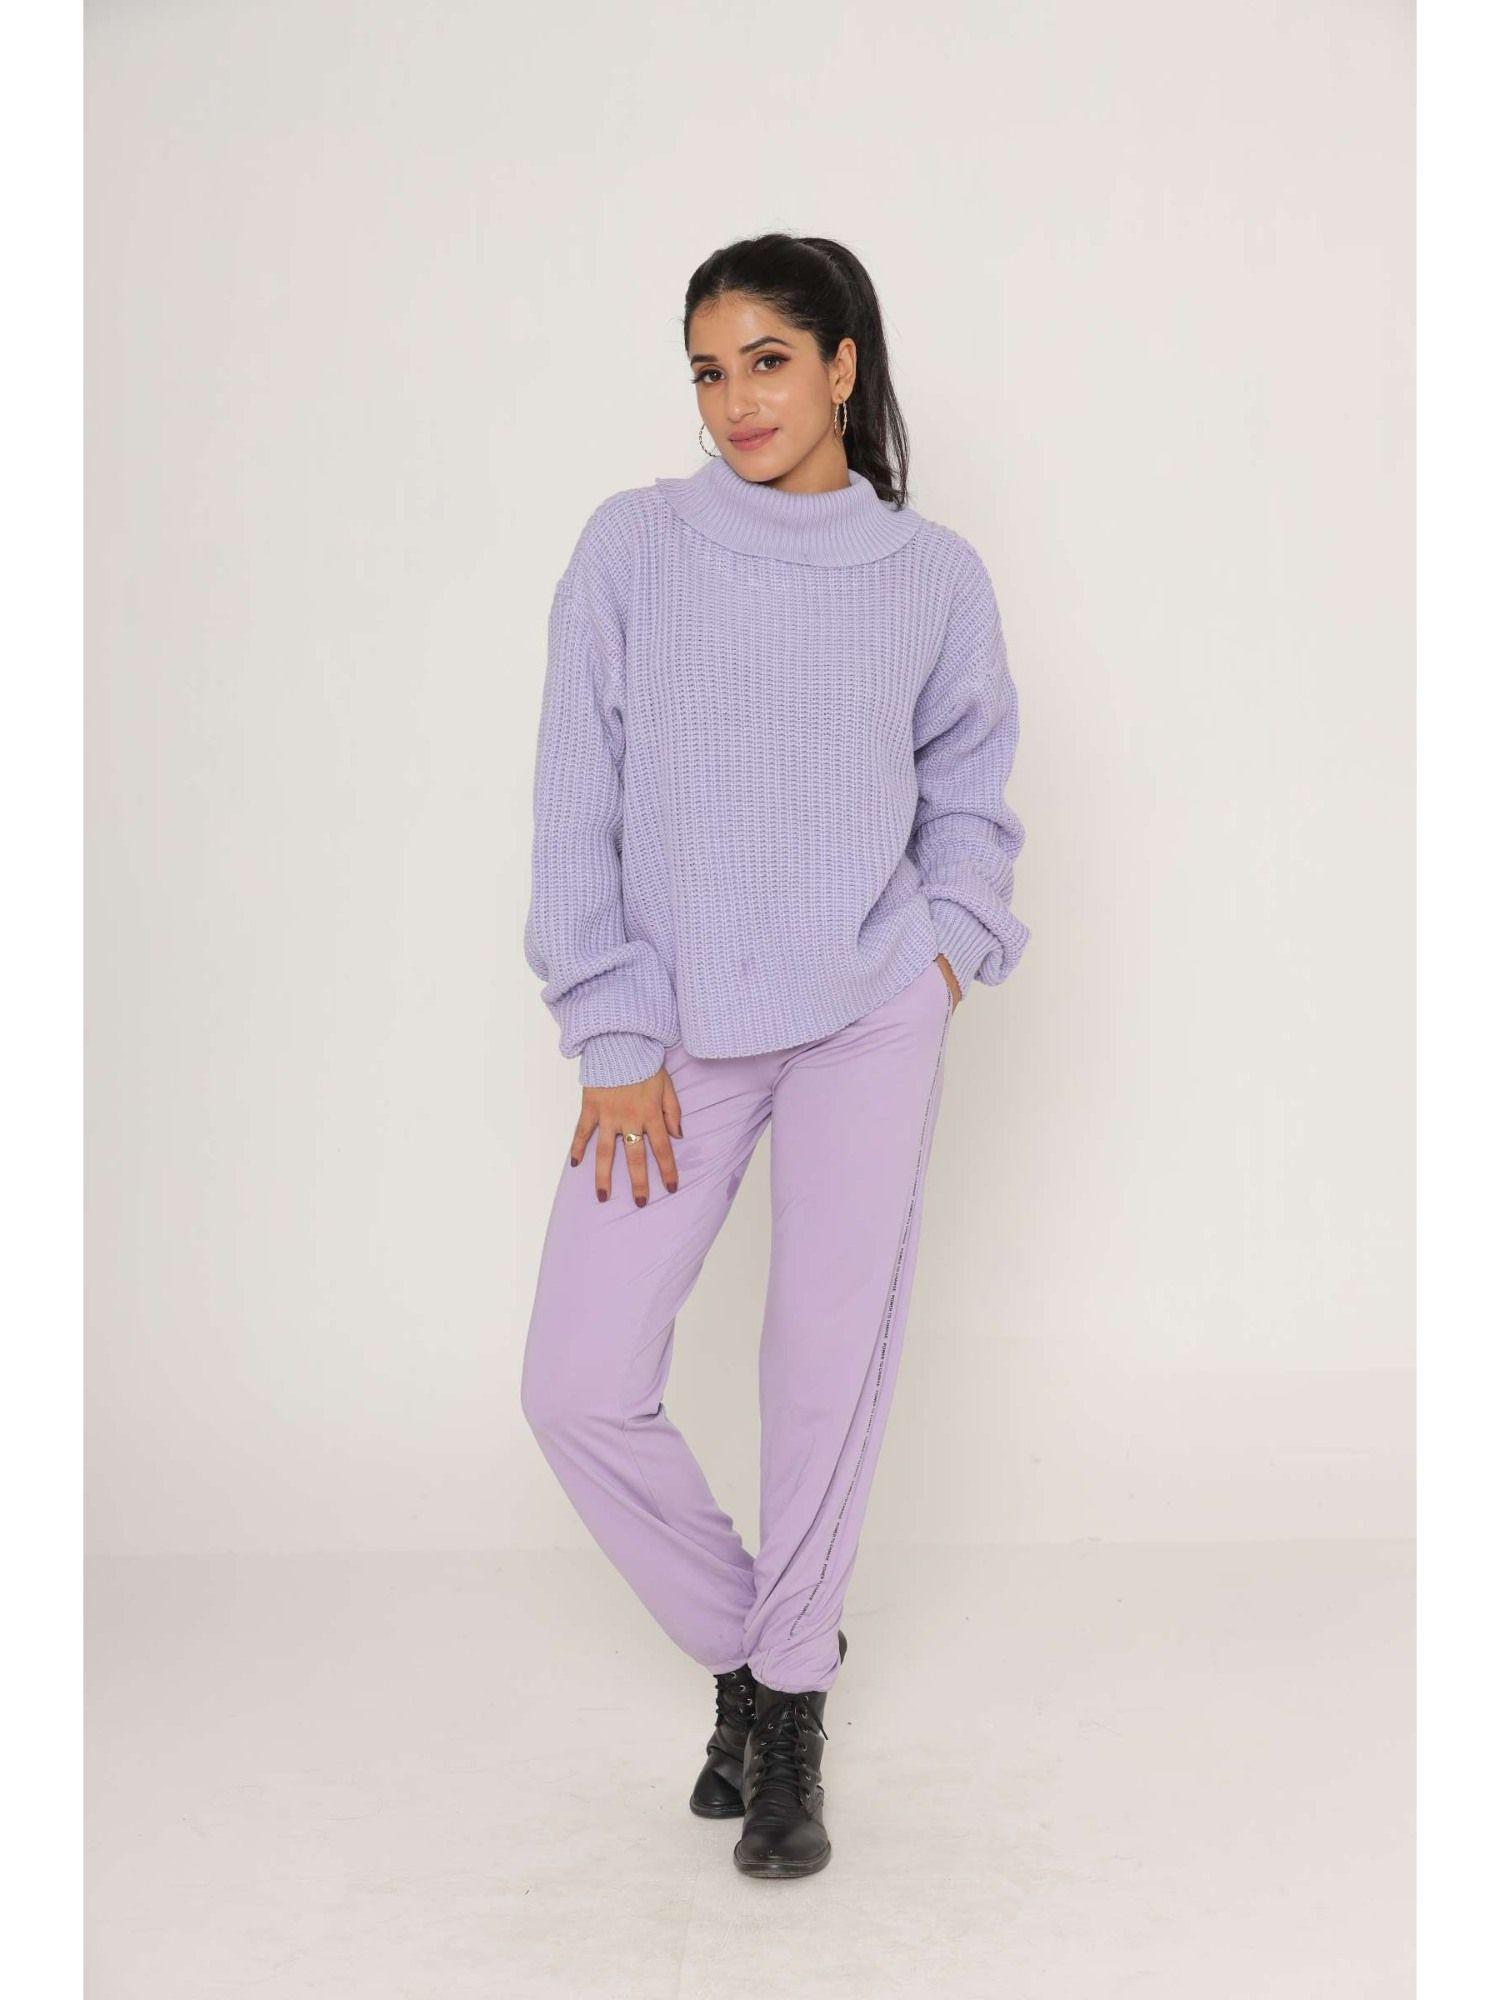 stylish-oversized-drop-shoulders-purple-woollen-sweaters-for-women